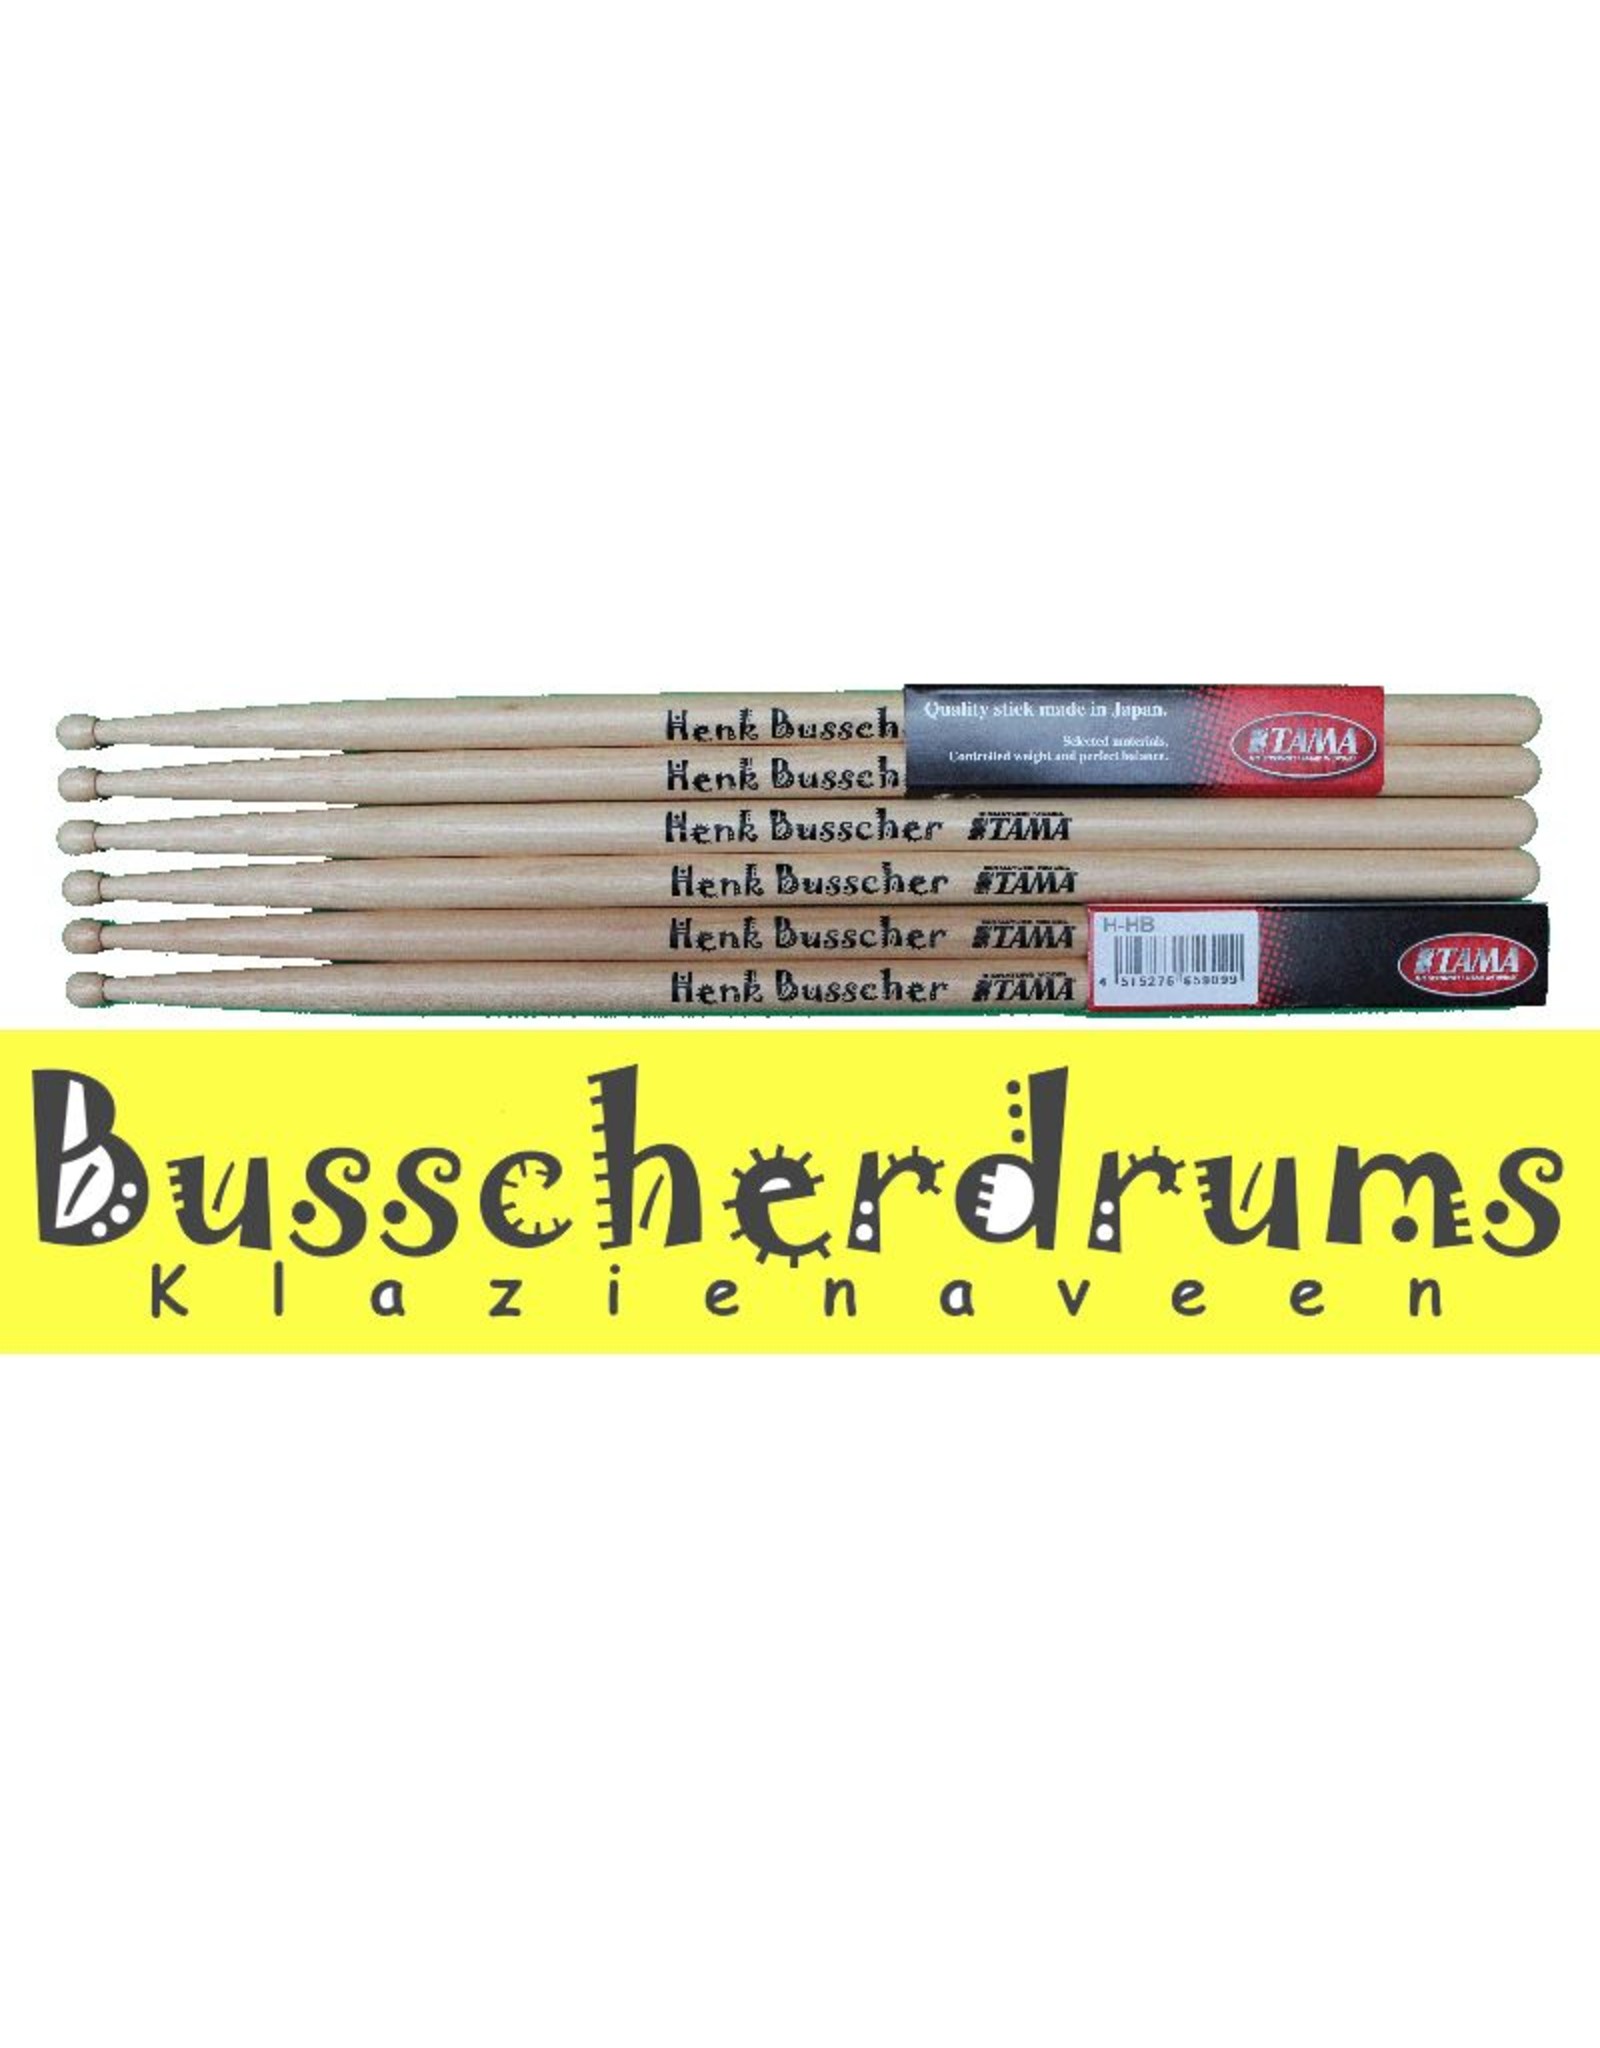 Tama Henk Busscher drum sticks